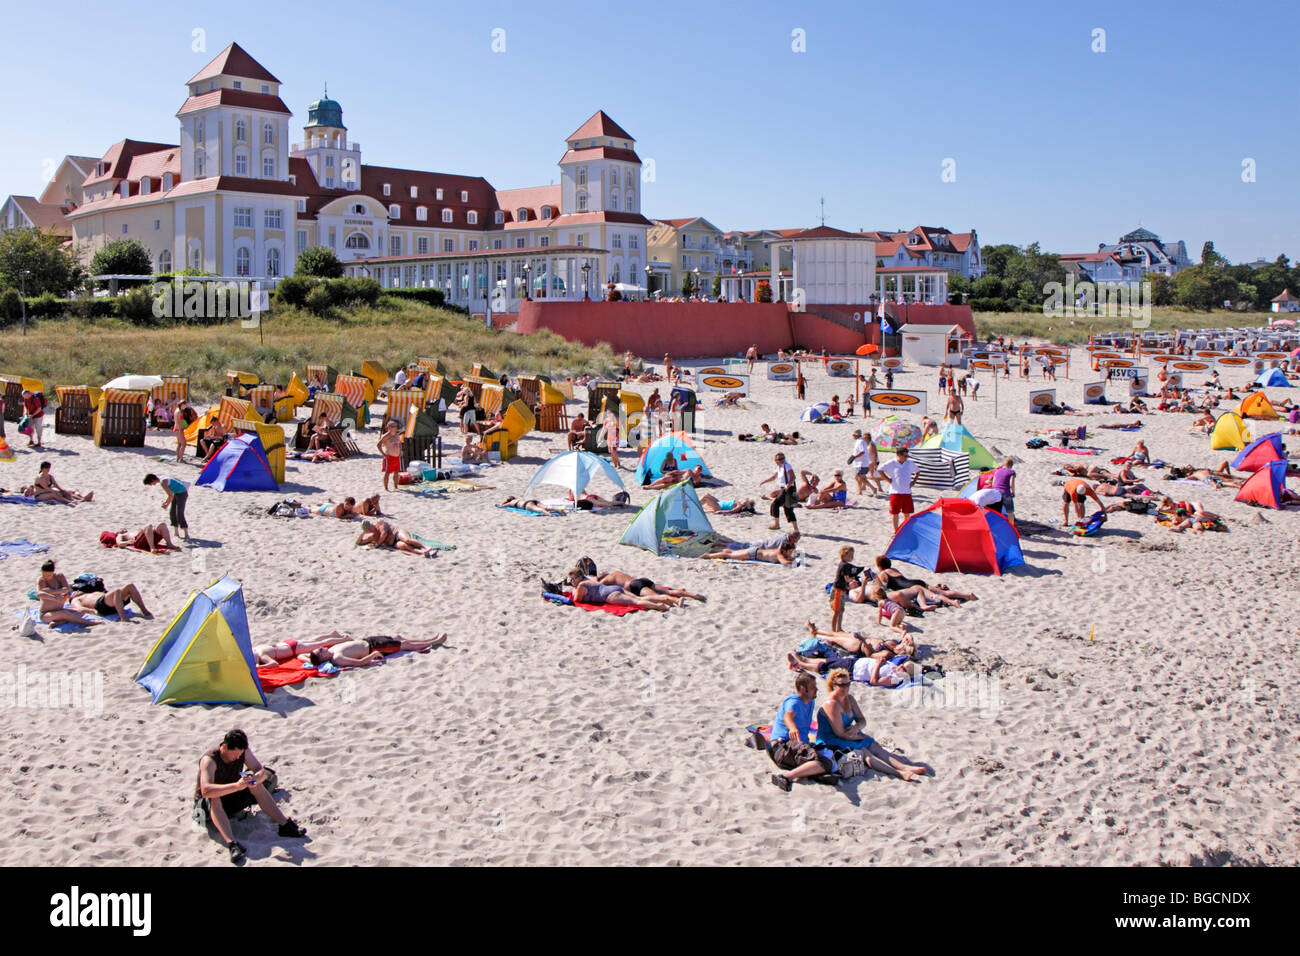 Spa Hotel und Strand von Binz, Insel Rügen, Mecklenburg-West Pomerania, Deutschland Stockfoto